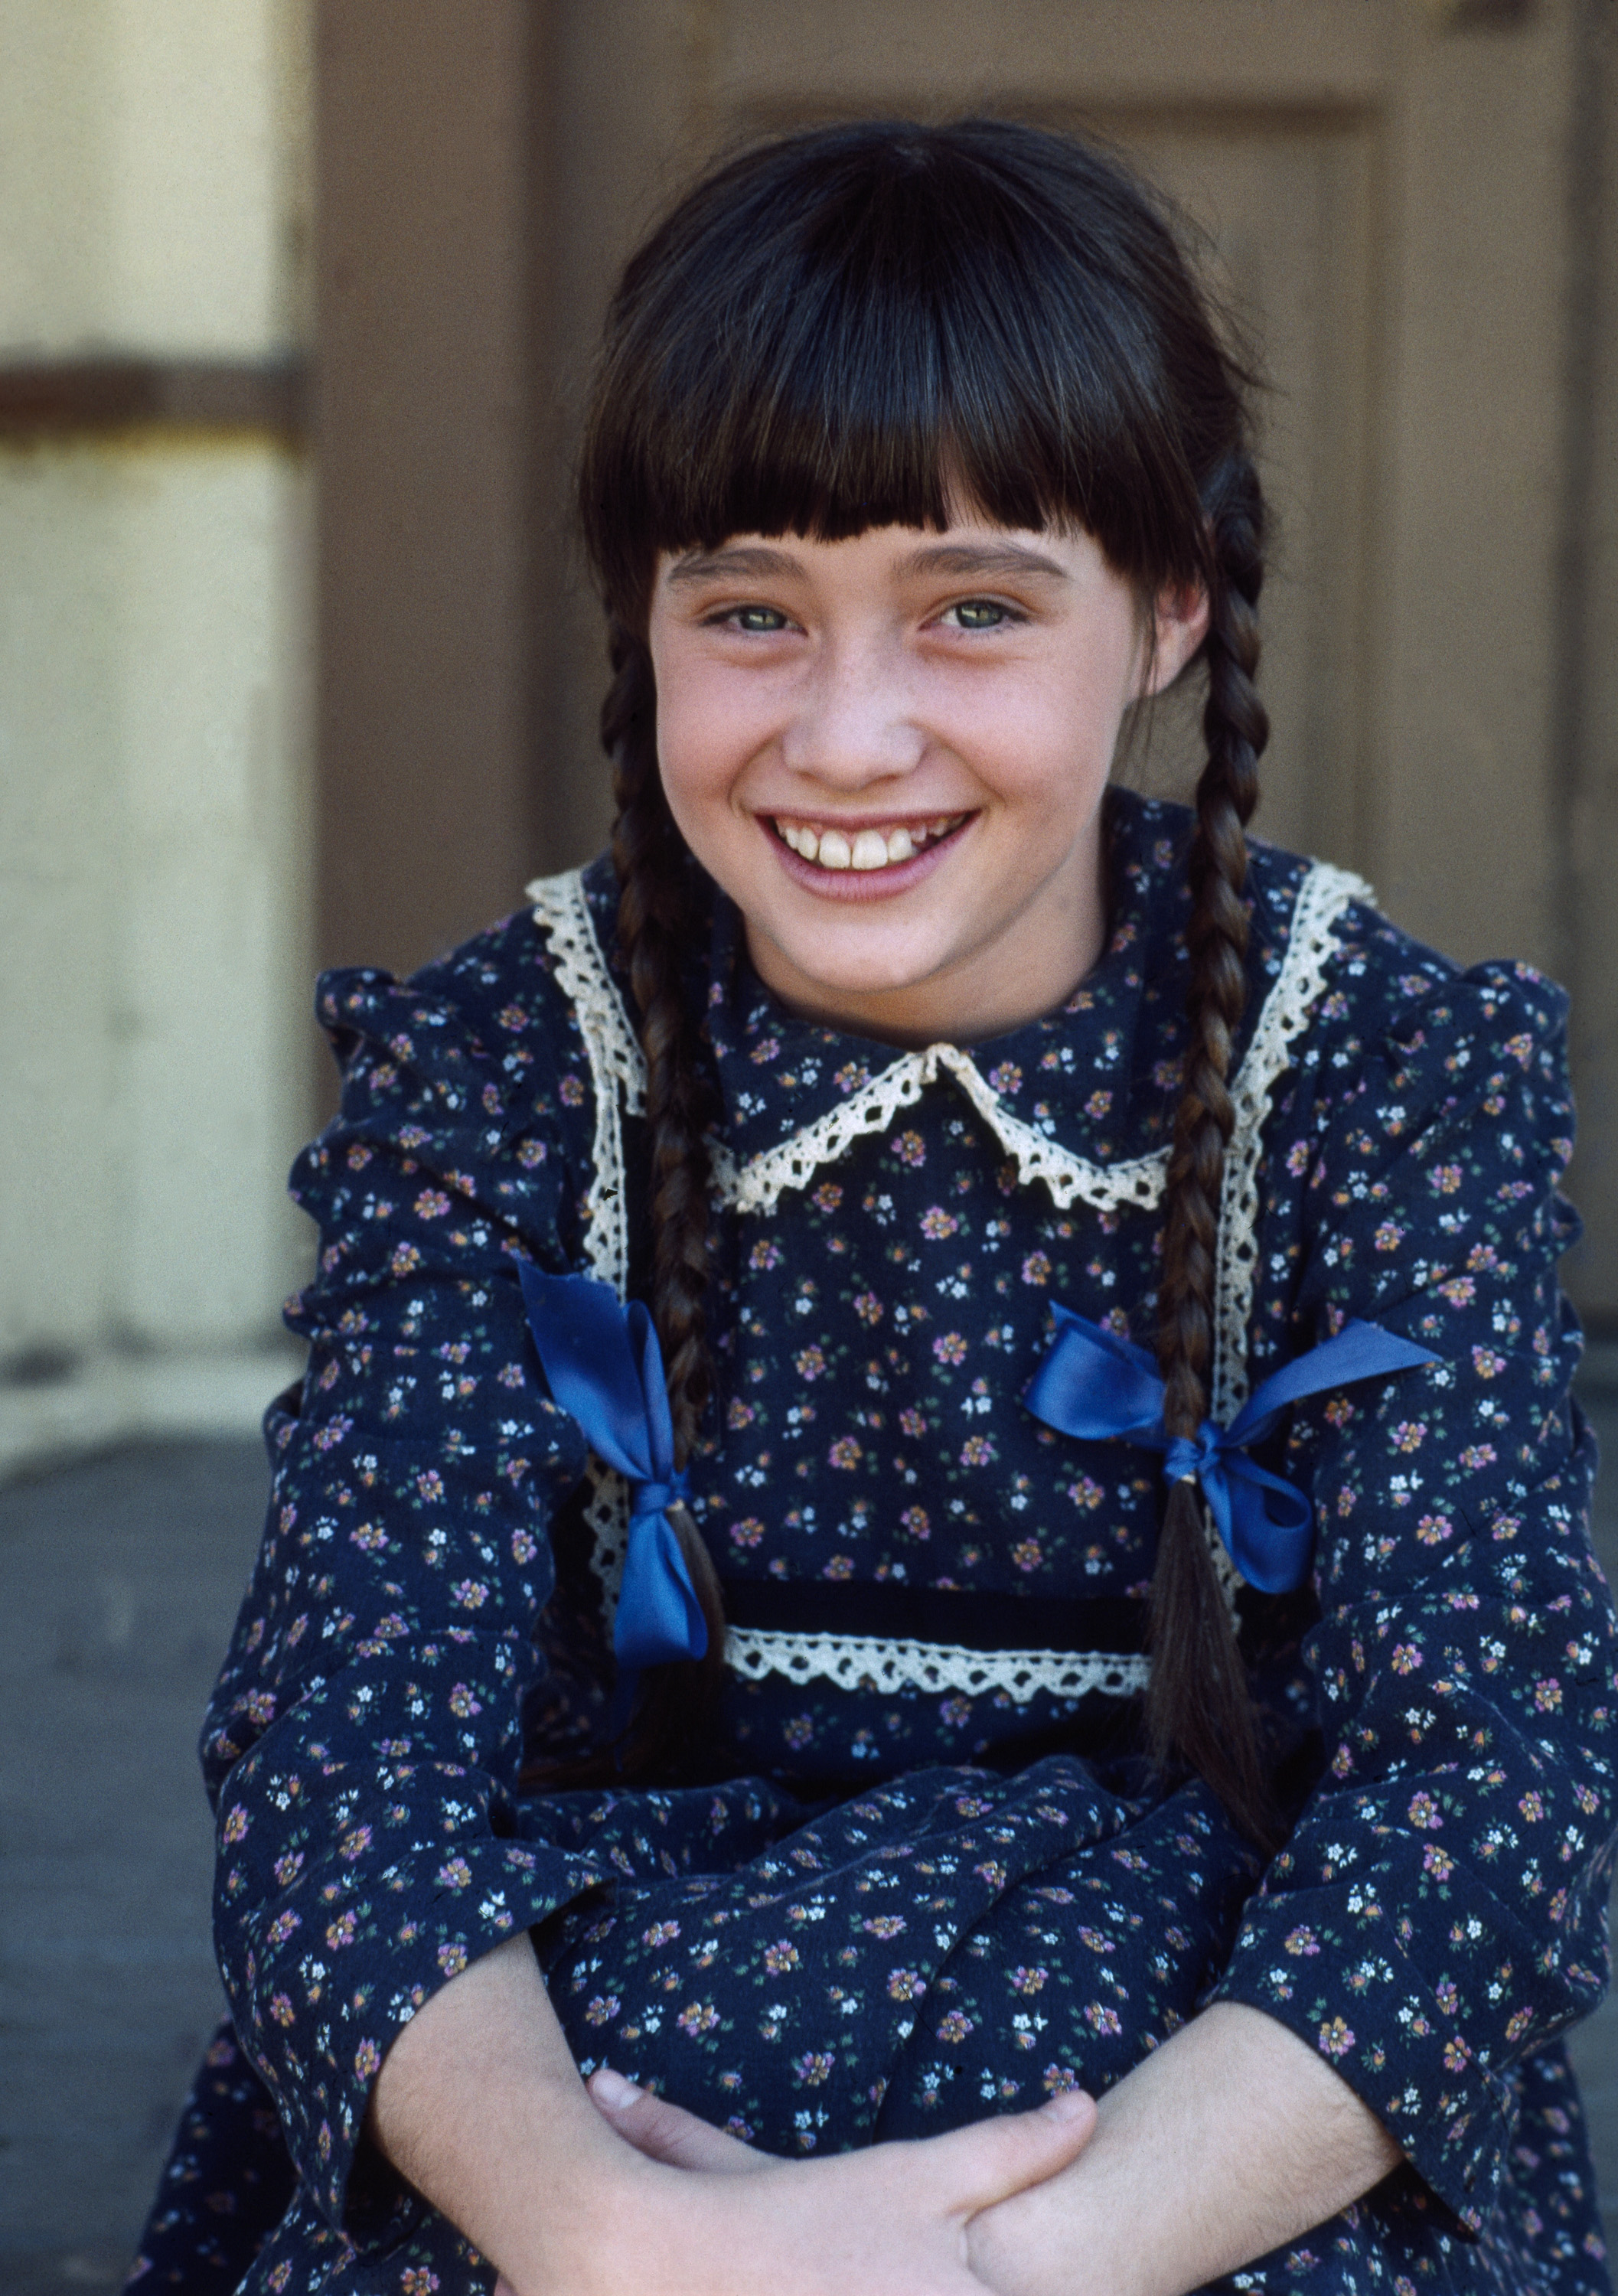 Shannen Doherty als Jenny Wilder in "Little House on the Prairie" im Jahr 1982. | Quelle: Getty Images